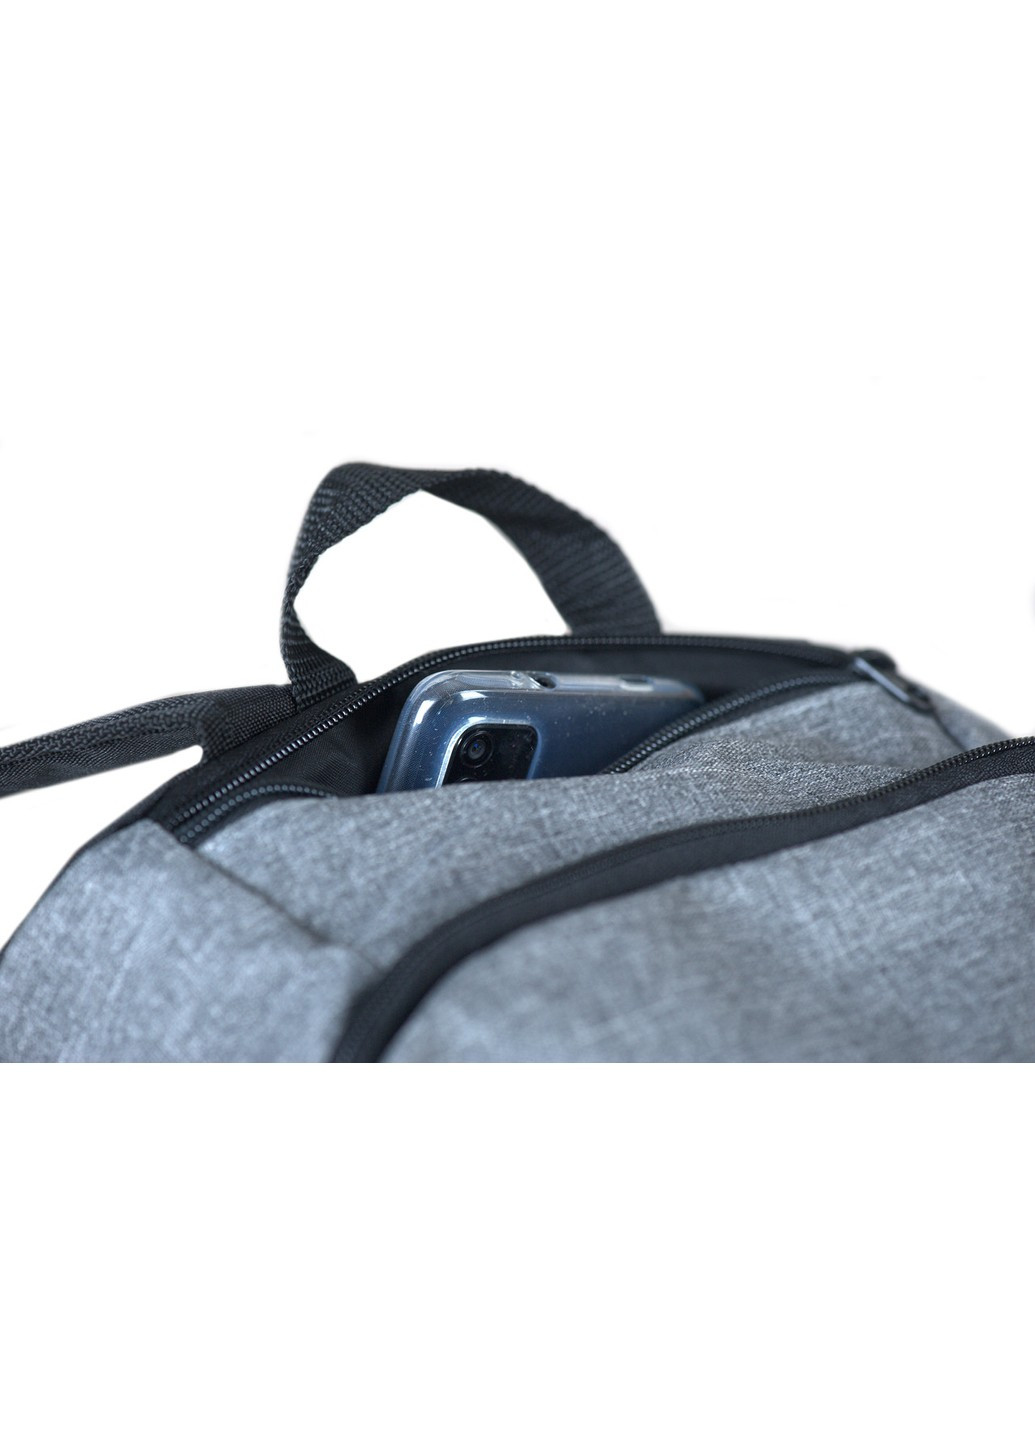 Спортивный женский рюкзак среднего размера серый с черным с отделением под обувь и воду No Brand (258591332)